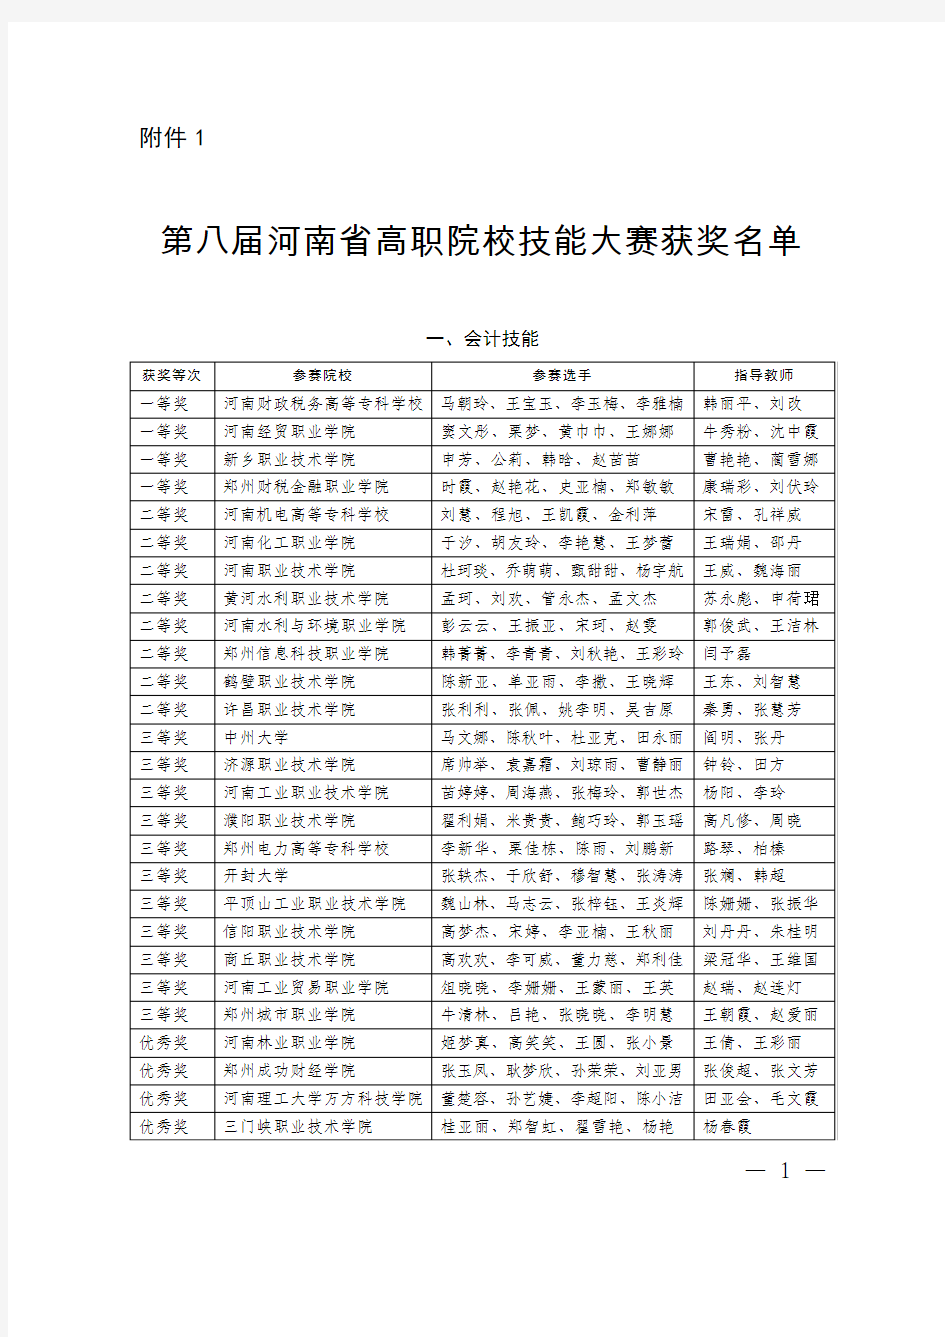 第八届河南省高职院校技能大赛获奖名单